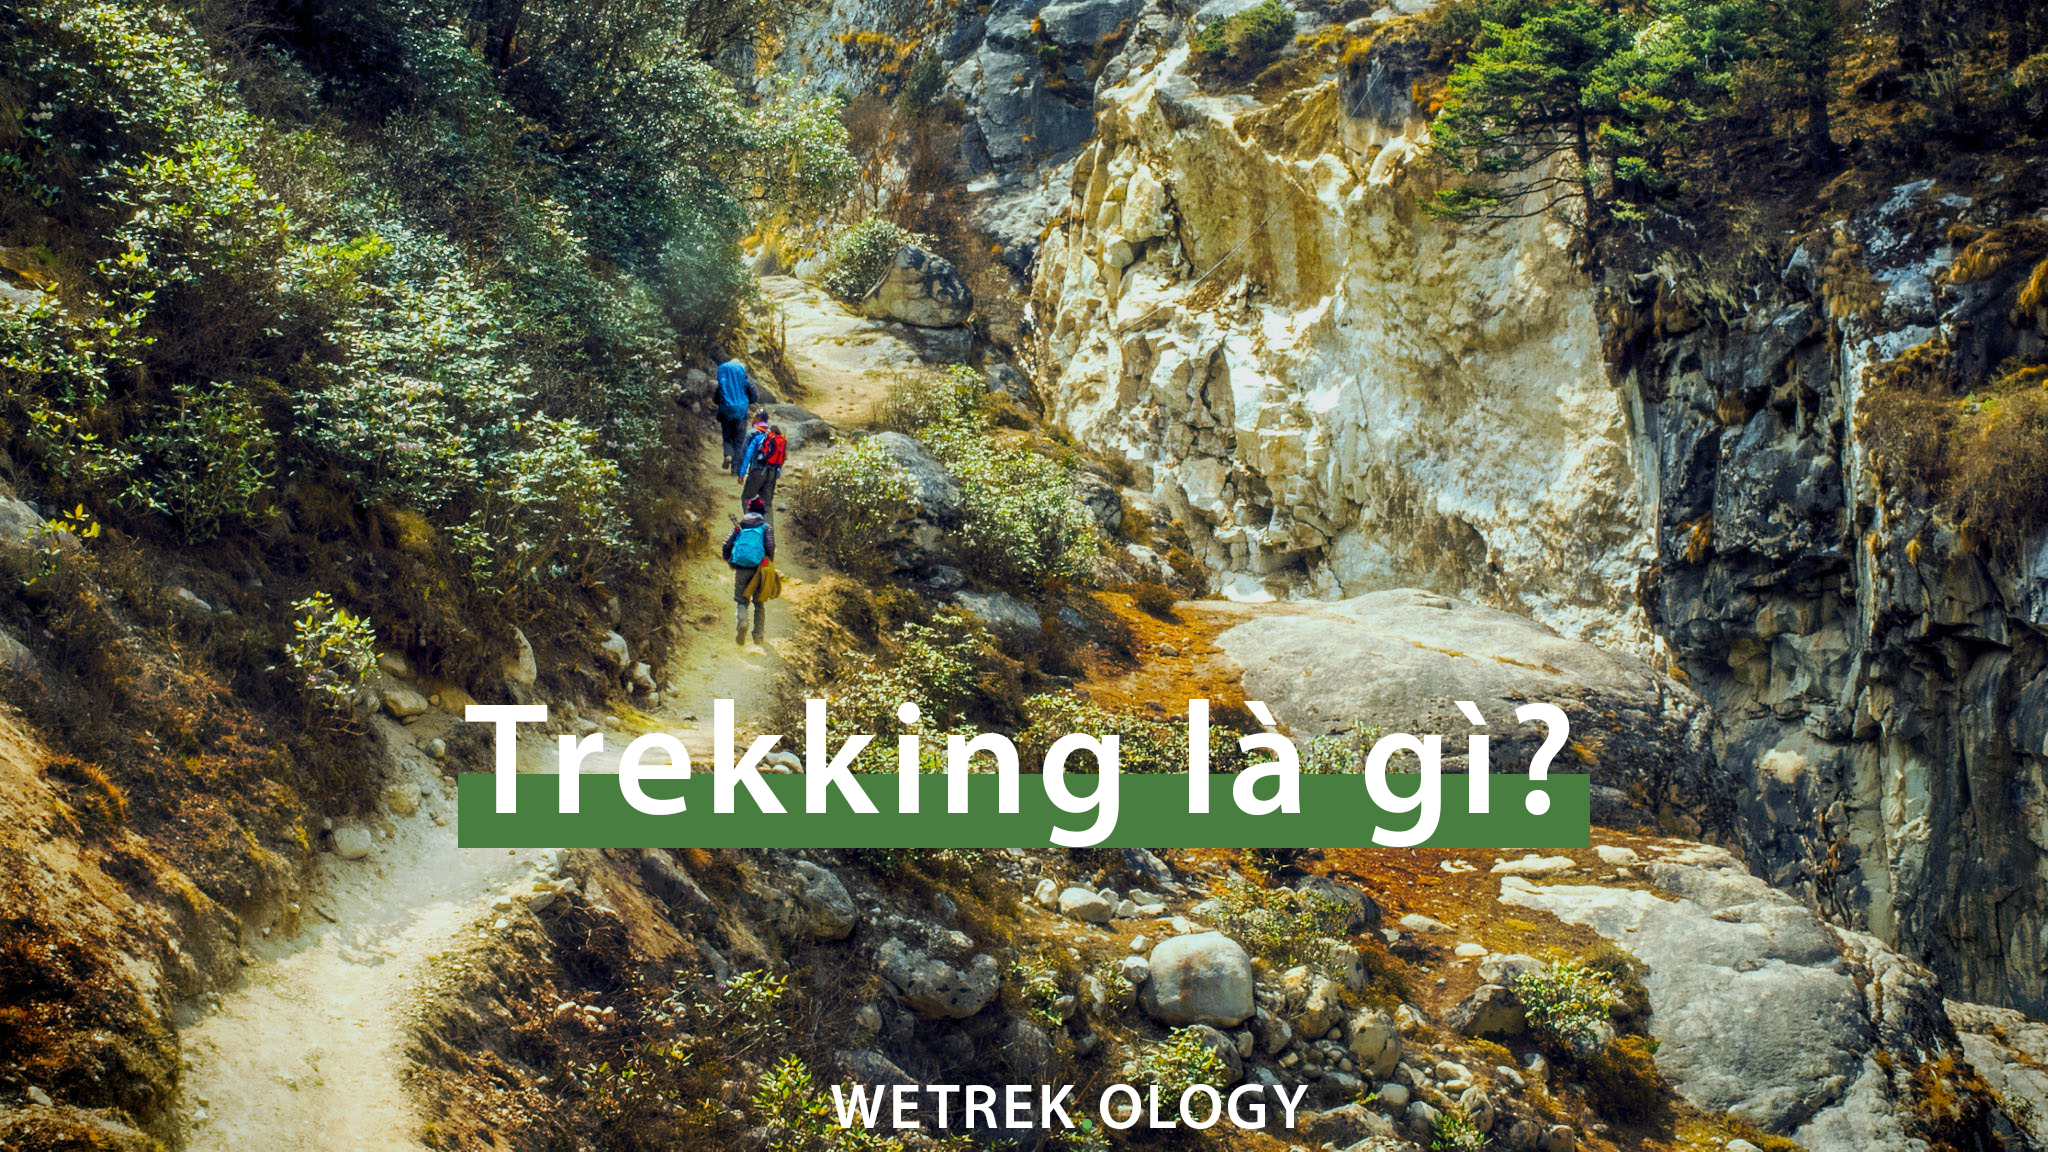 Trekking là gὶ